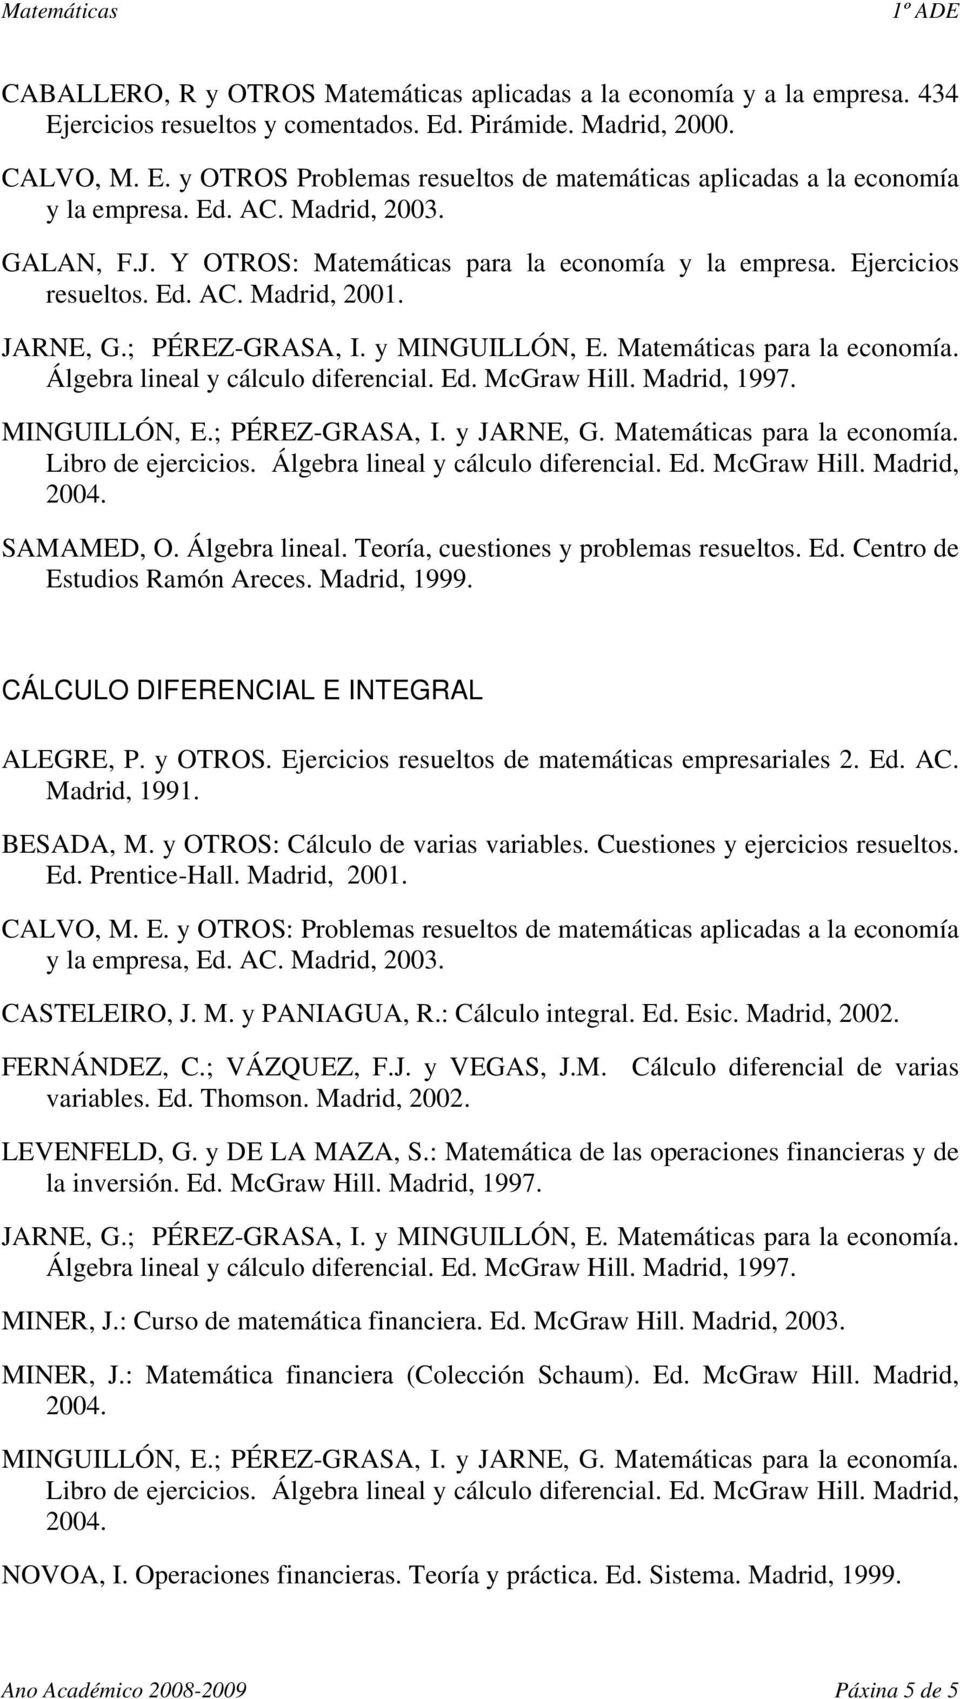 Matemáticas para la economía. Álgebra lineal y cálculo diferencial. Ed. McGraw Hill. Madrid, 1997. MINGUILLÓN, E.; PÉREZ-GRASA, I. y JARNE, G. Matemáticas para la economía. Libro de ejercicios.